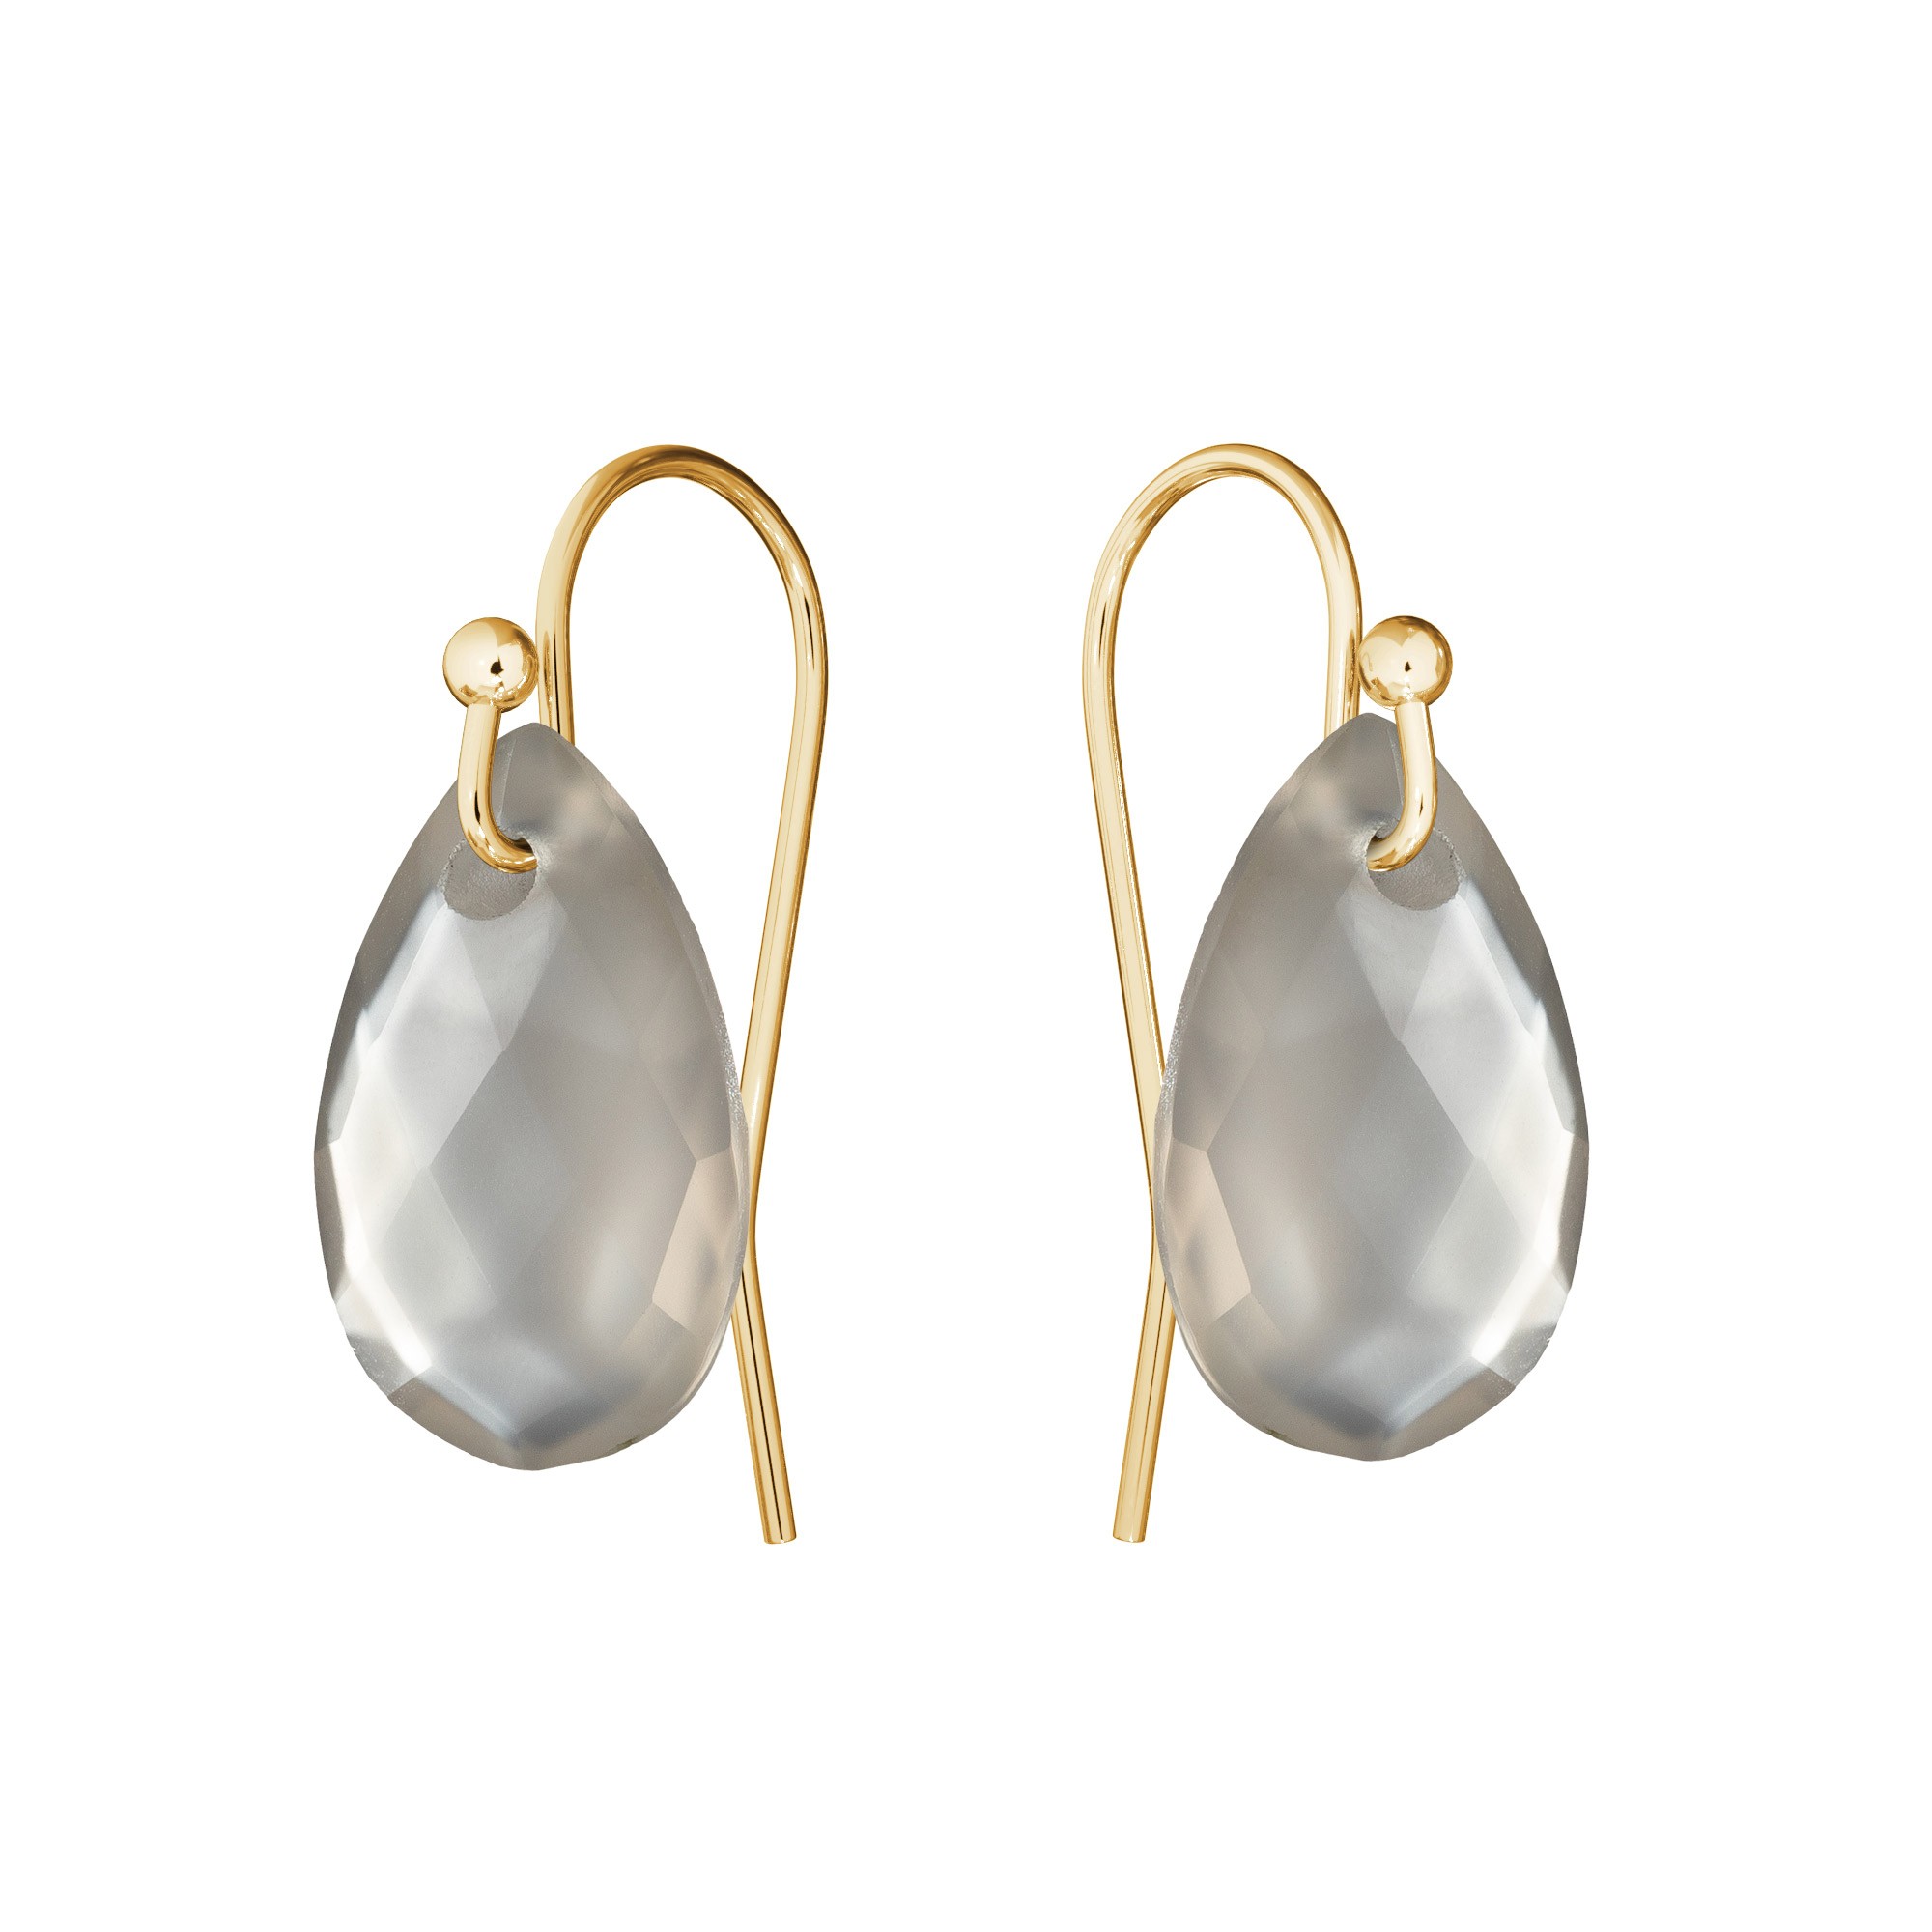 Ohrringe mit natur Gavbari stein, gold 585